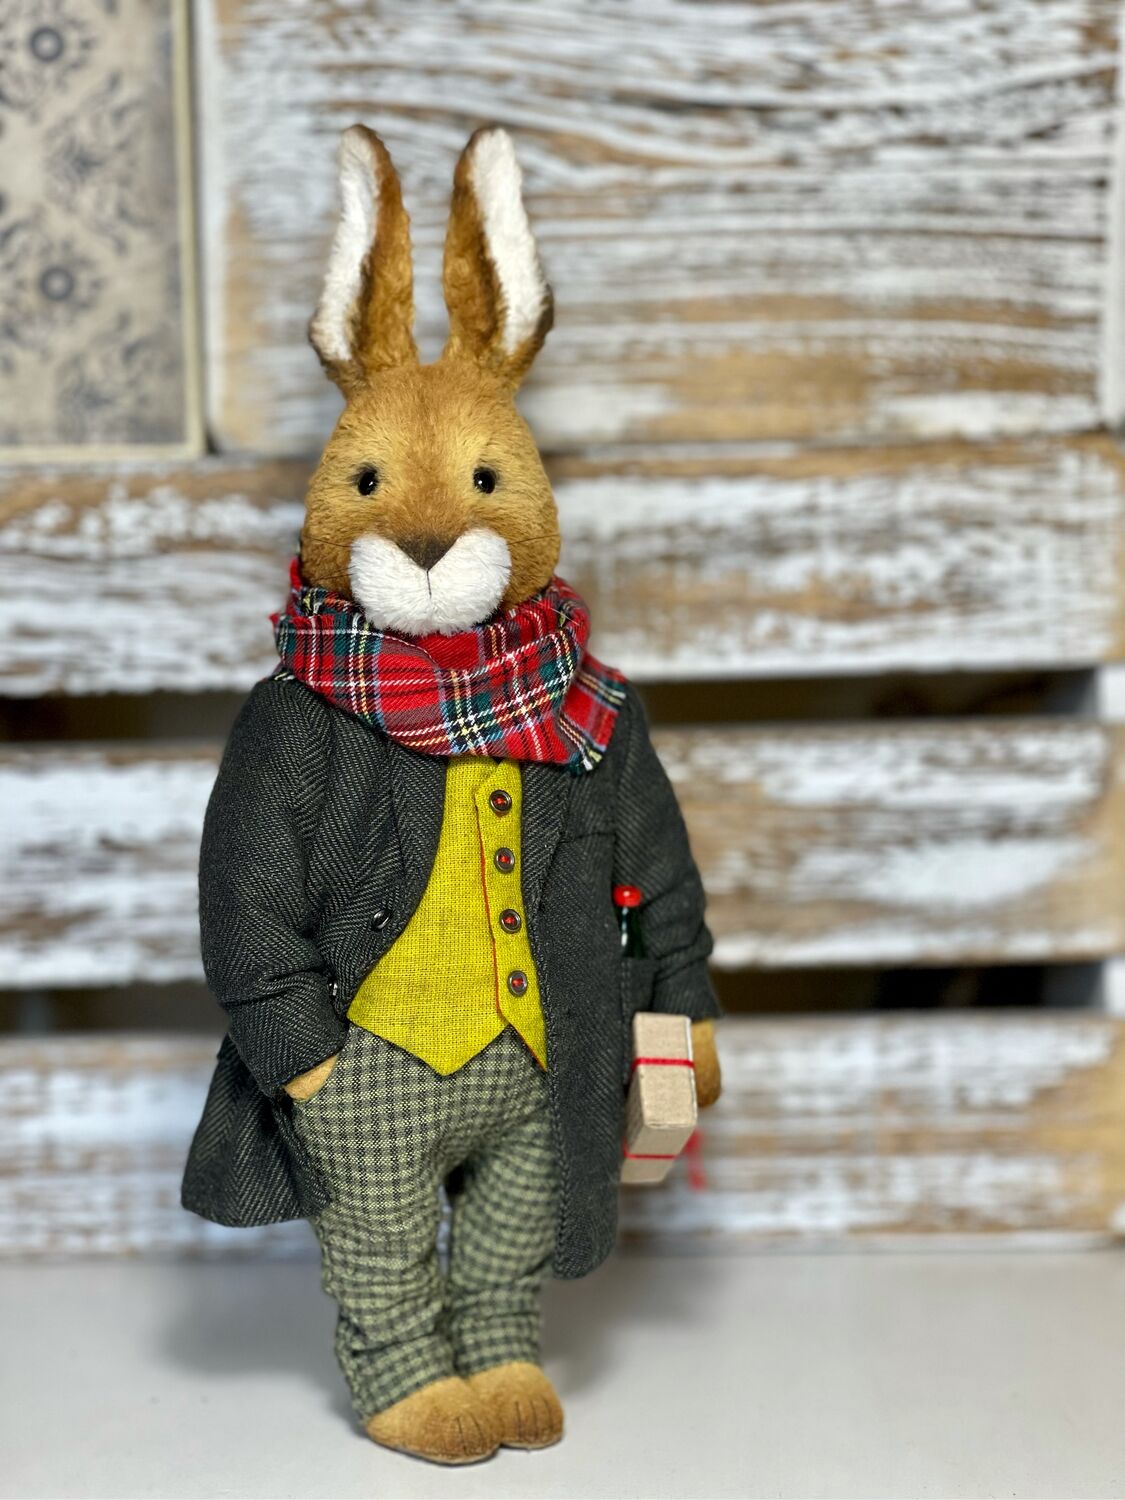 Выкройки для шитья мягкой игрушки – кролика (или зайчика).